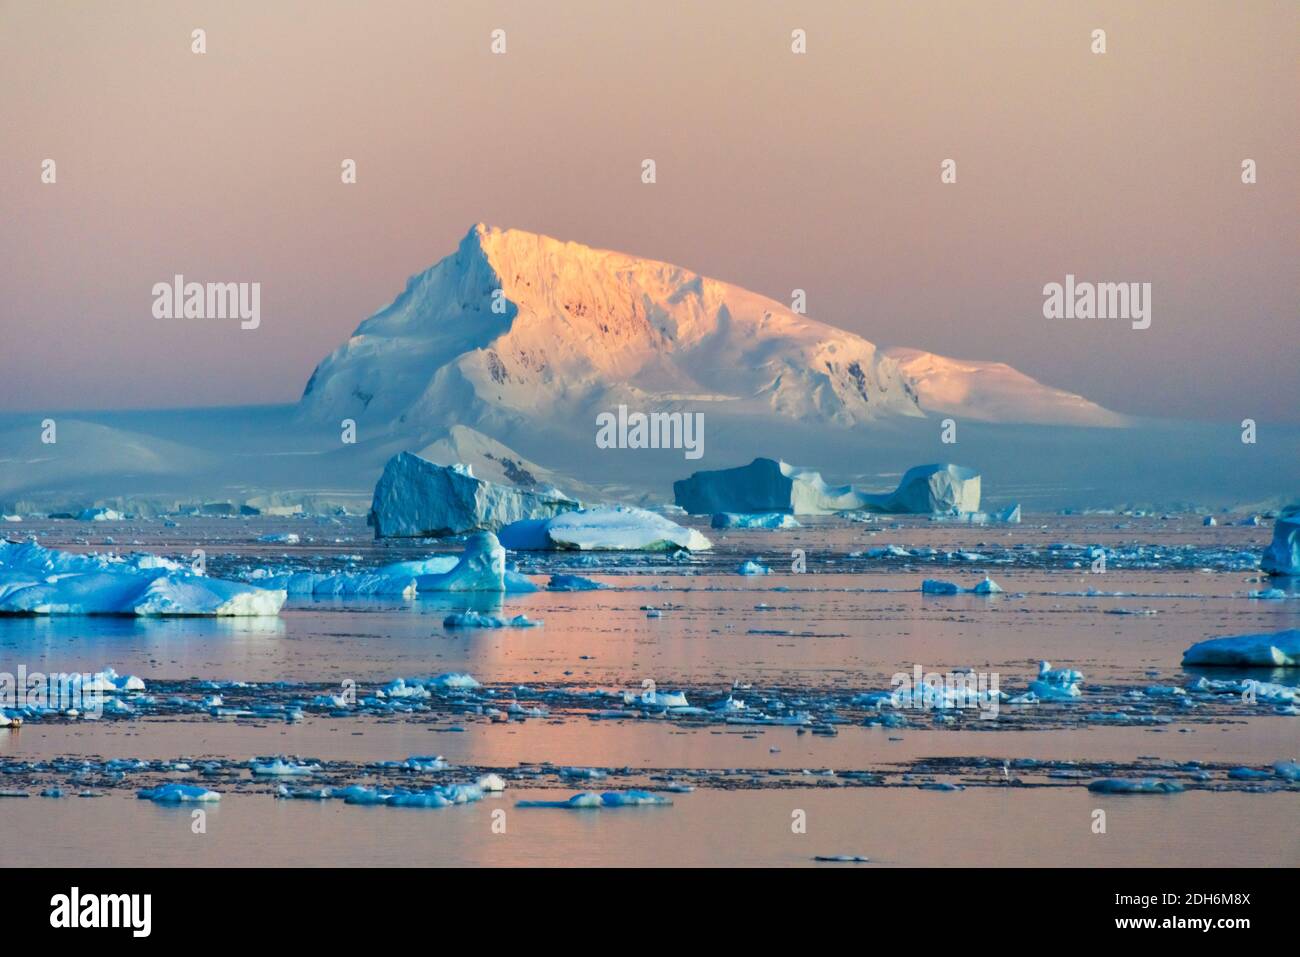 Île enneigée et glace flottante dans l'océan Atlantique Sud, Antarctique Banque D'Images